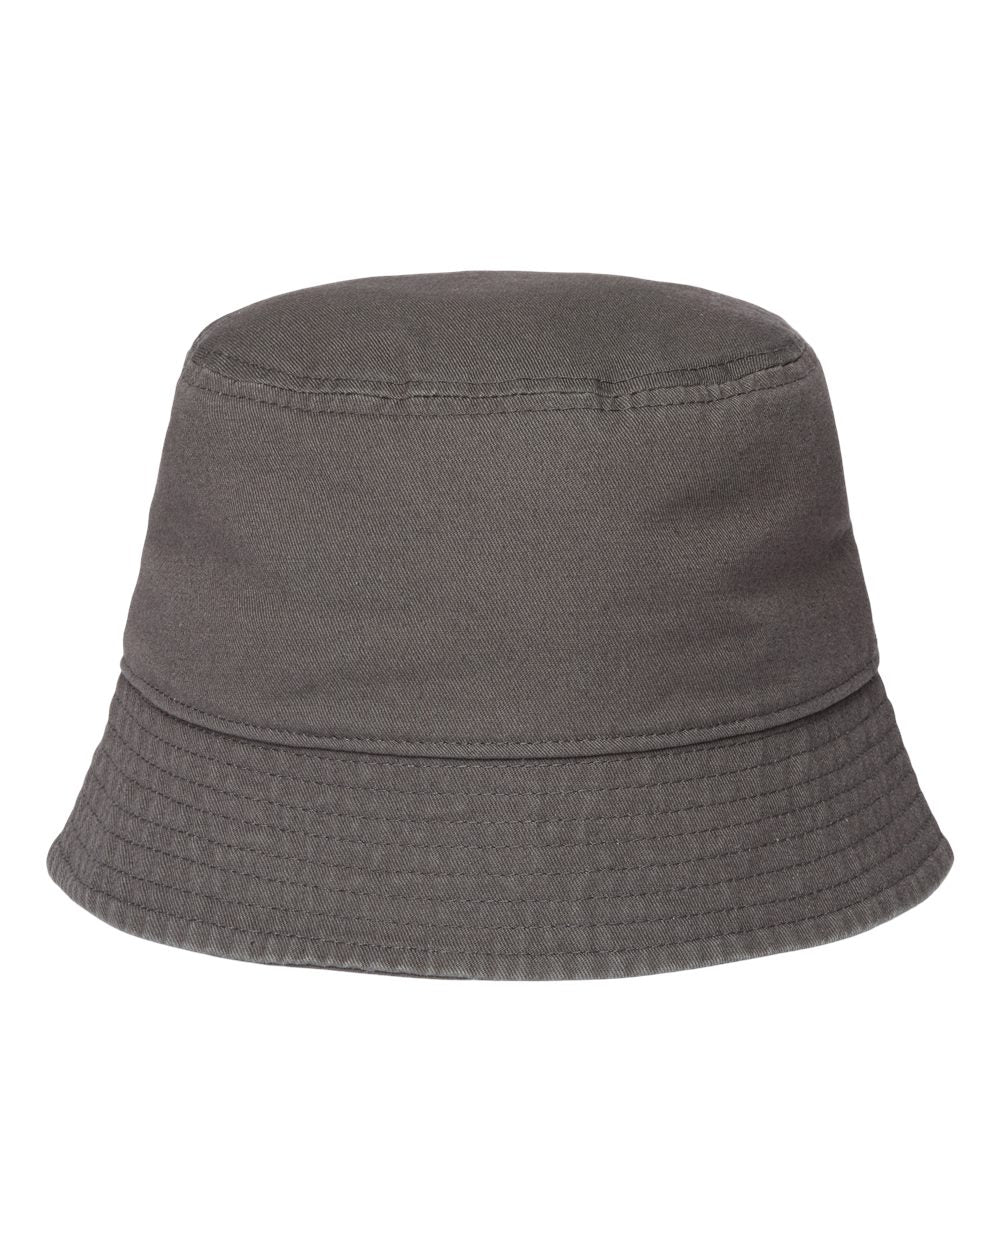 Atlantis Headwear - Sustainable Bucket Hat - POWELL